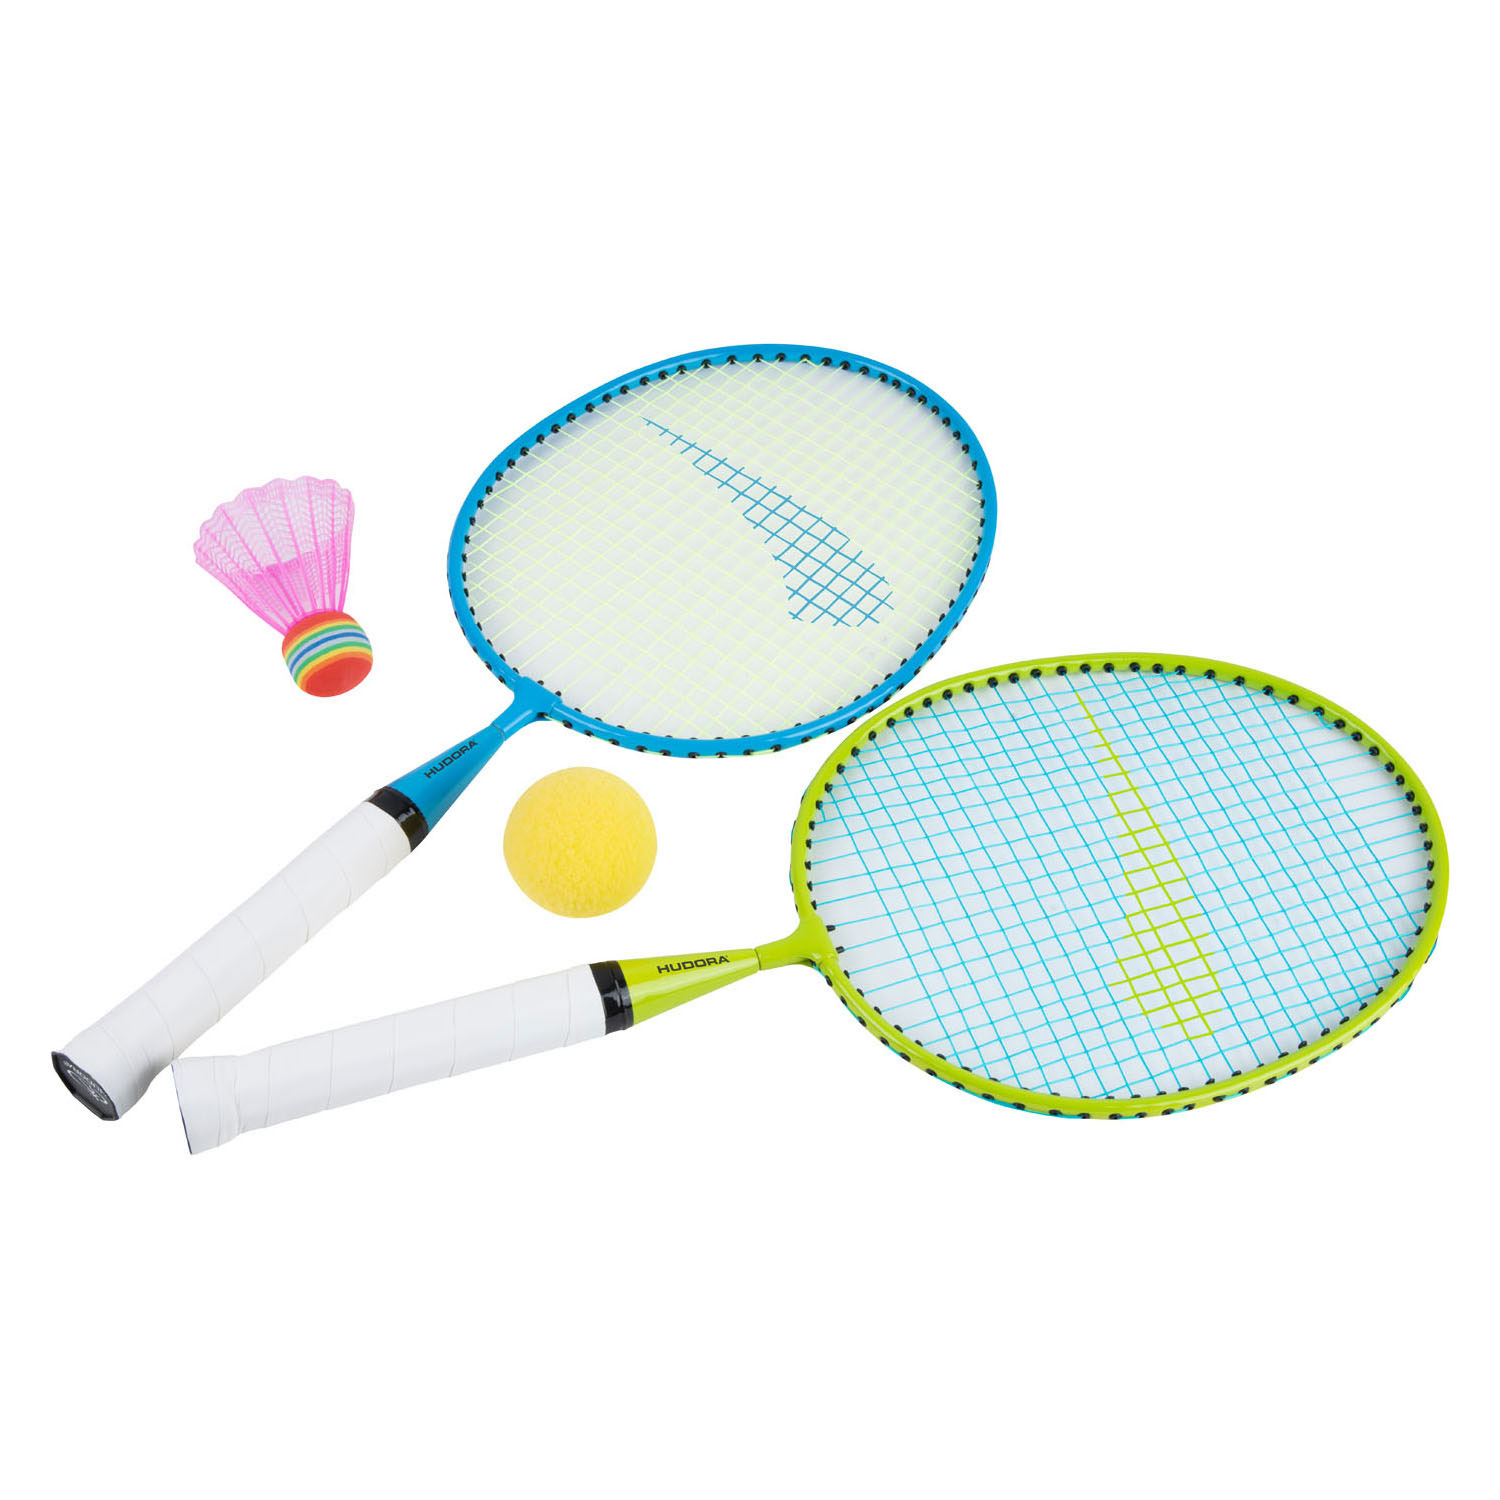 Continu Laan Verrijking Hudora Badmintonset online kopen? | Lobbes Speelgoed